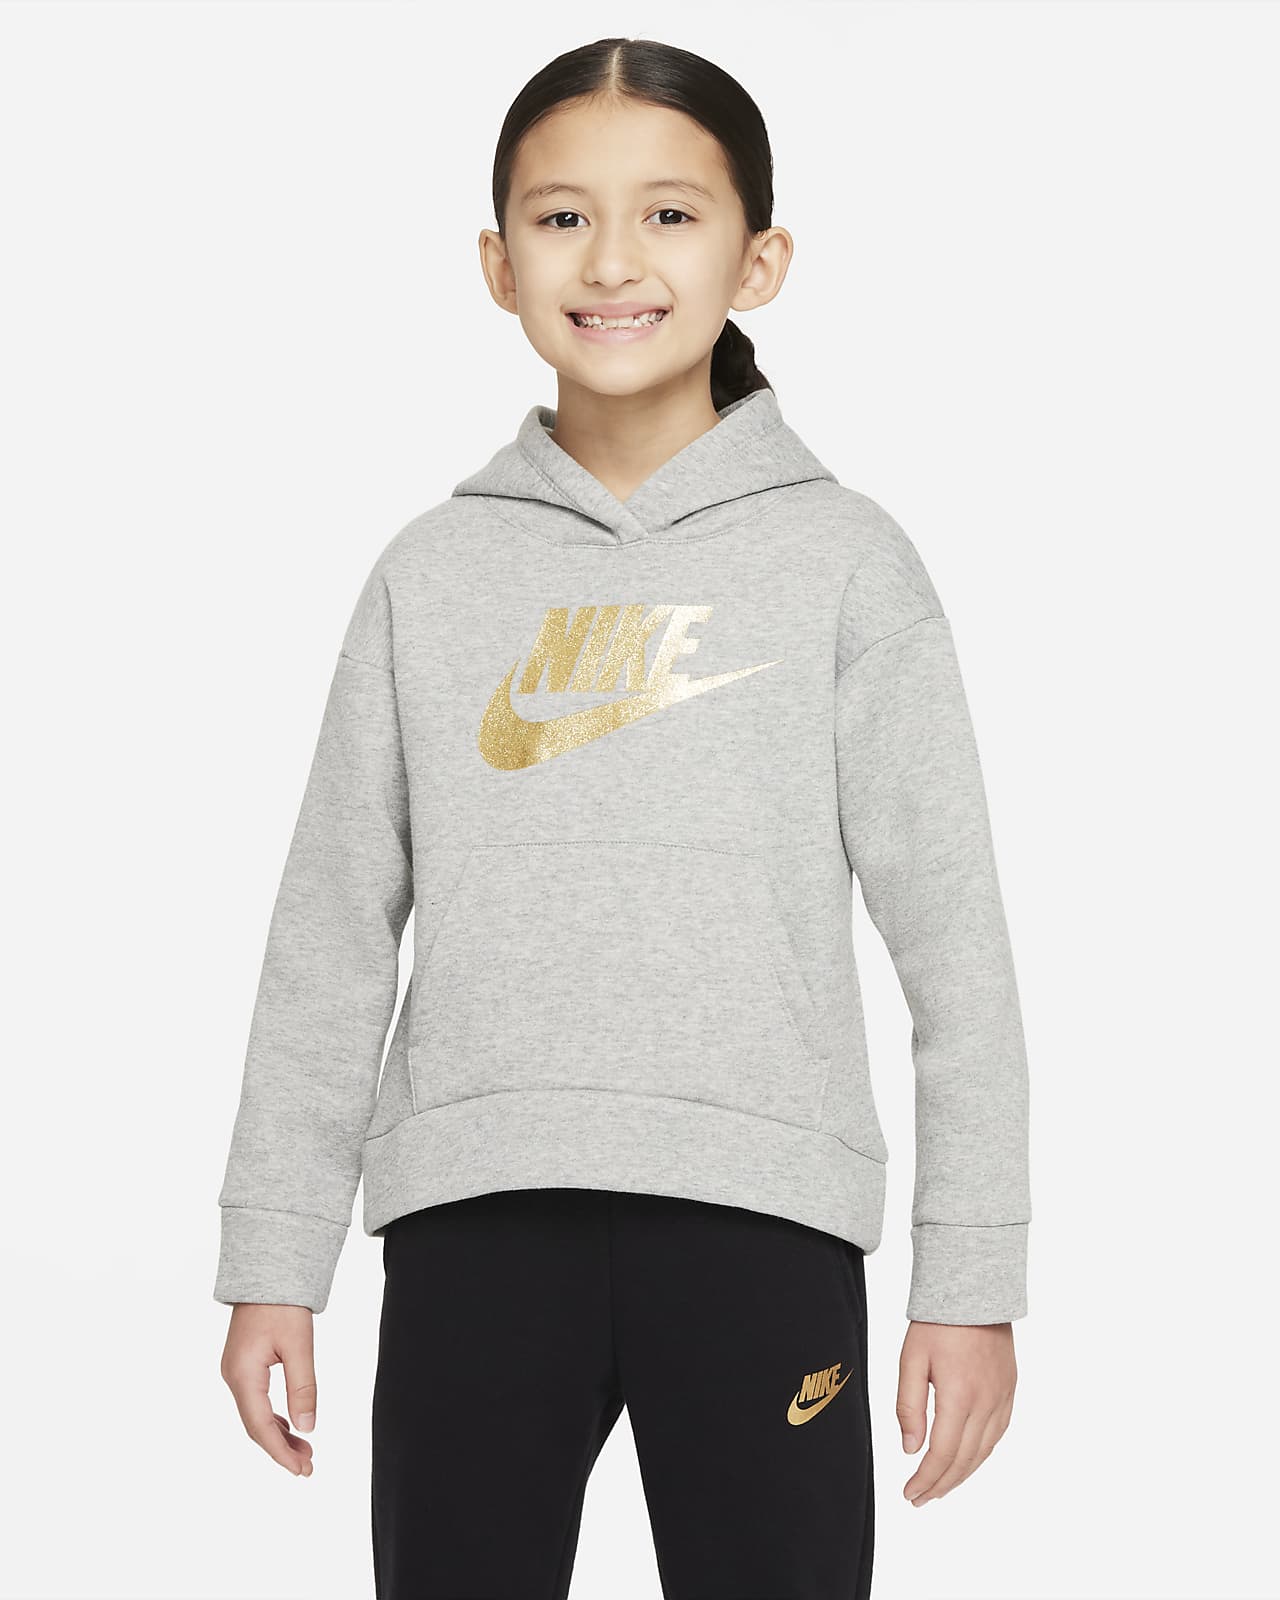 Nike-pullover-hættetrøje mindre børn. DK